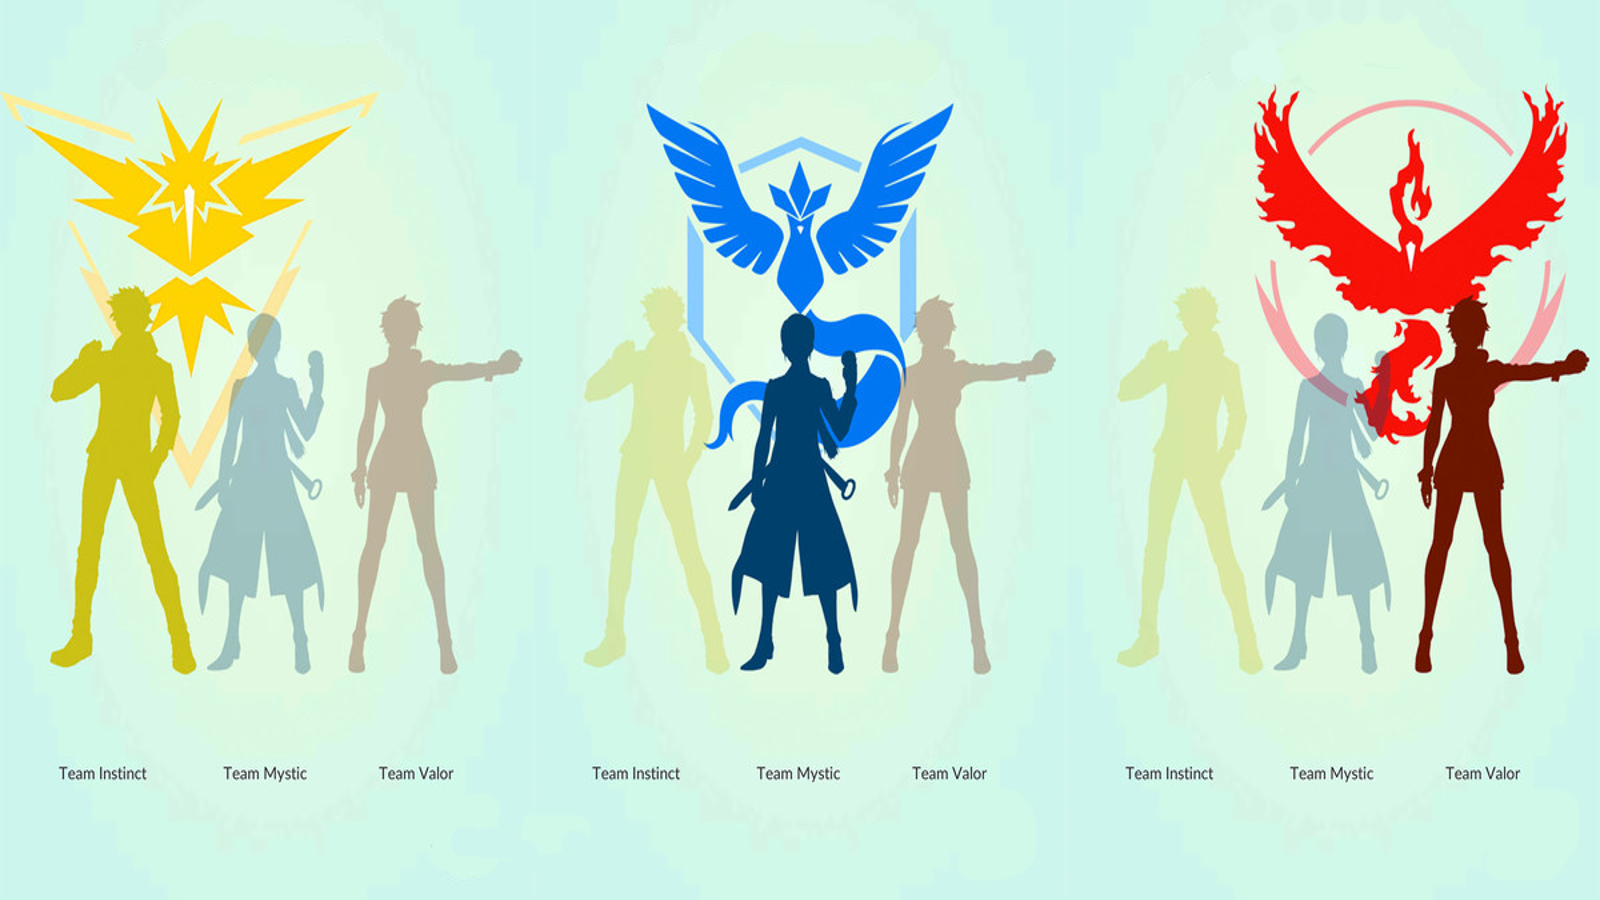 Wallpaper para celular em HD Pokémon Go Team Valor